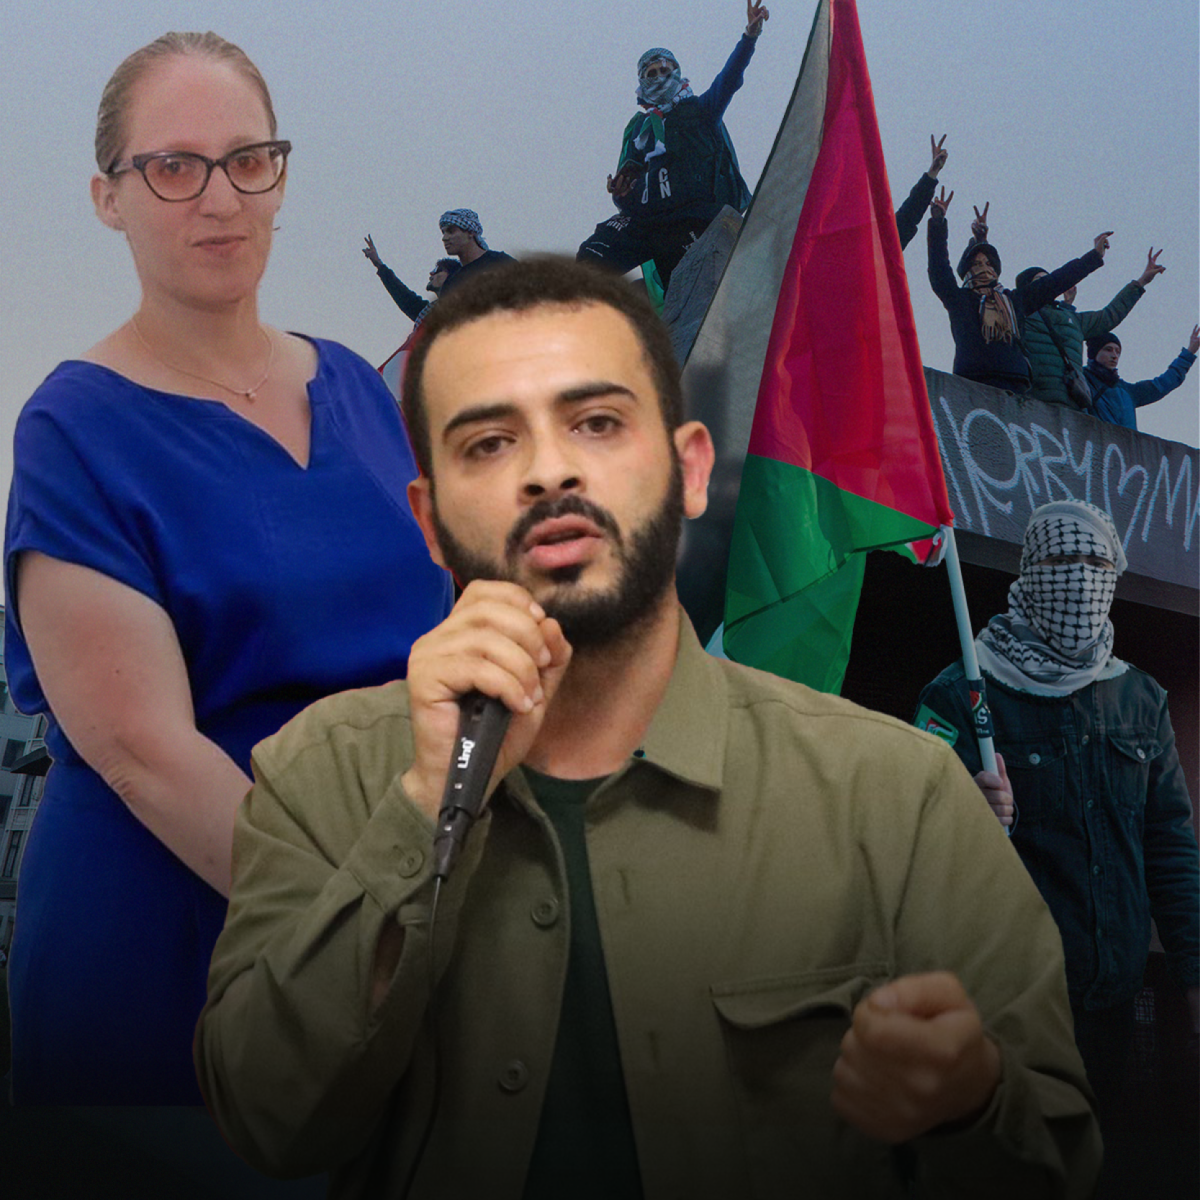 BELGIQUE : Nicole de Moor demande la révocation du statut de réfugié de Mohammed Khatib, réfugié politique palestinien